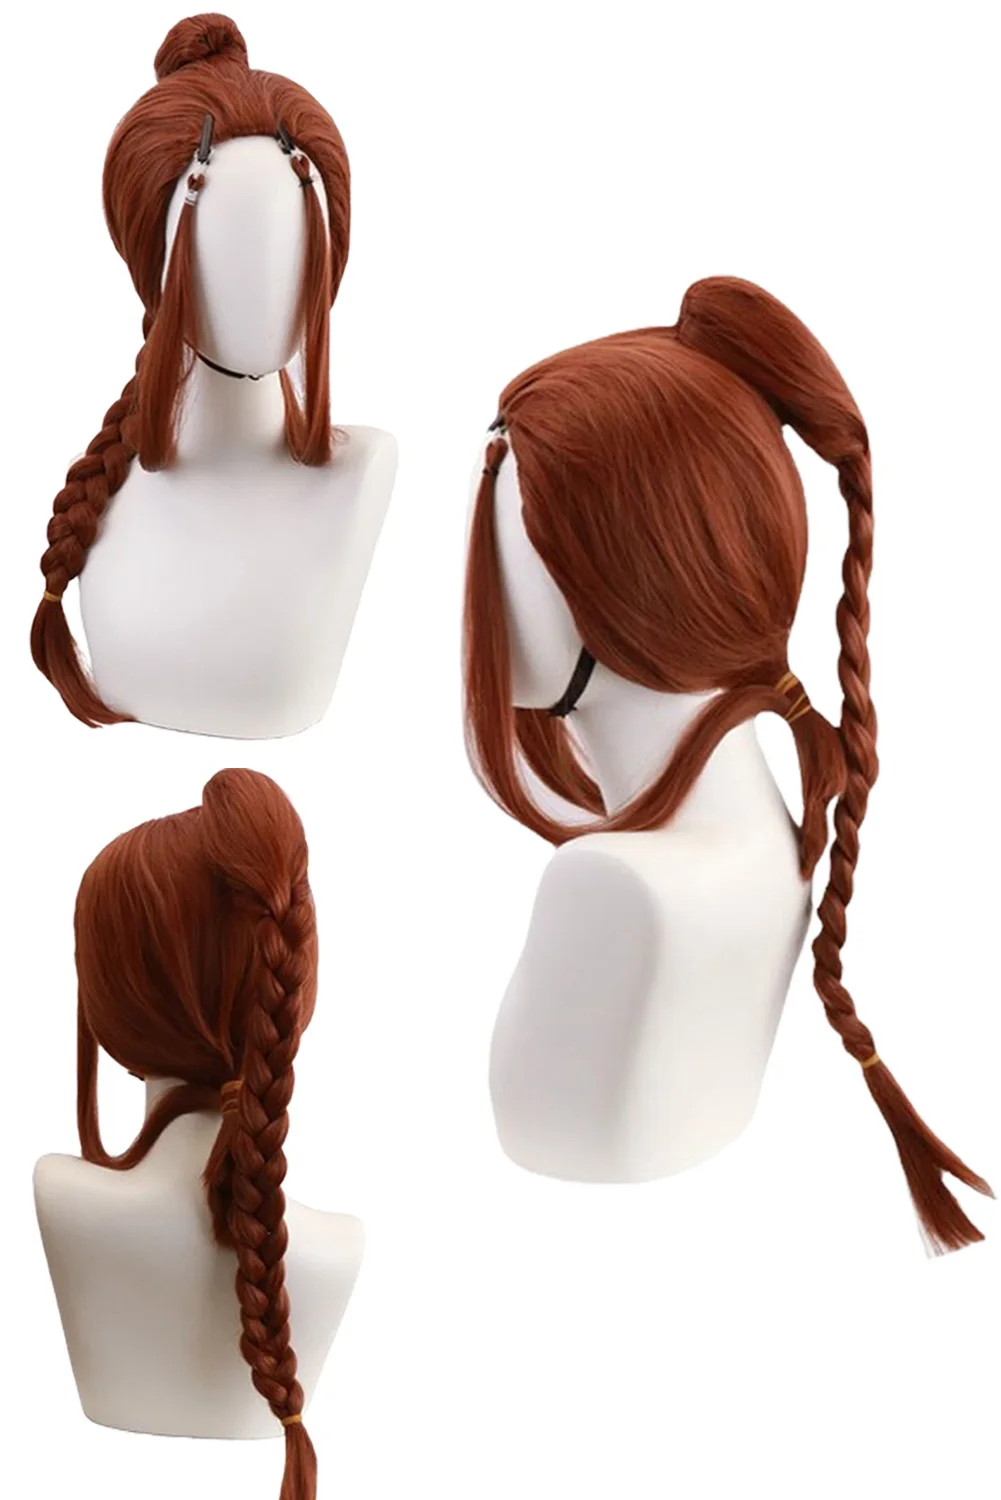 

Длинный парик Katara для косплея, женский аксессуар для костюма, аватар из мультфильма, последний косплей, страйбандер, фантазия, искусственные волосы, реквизит